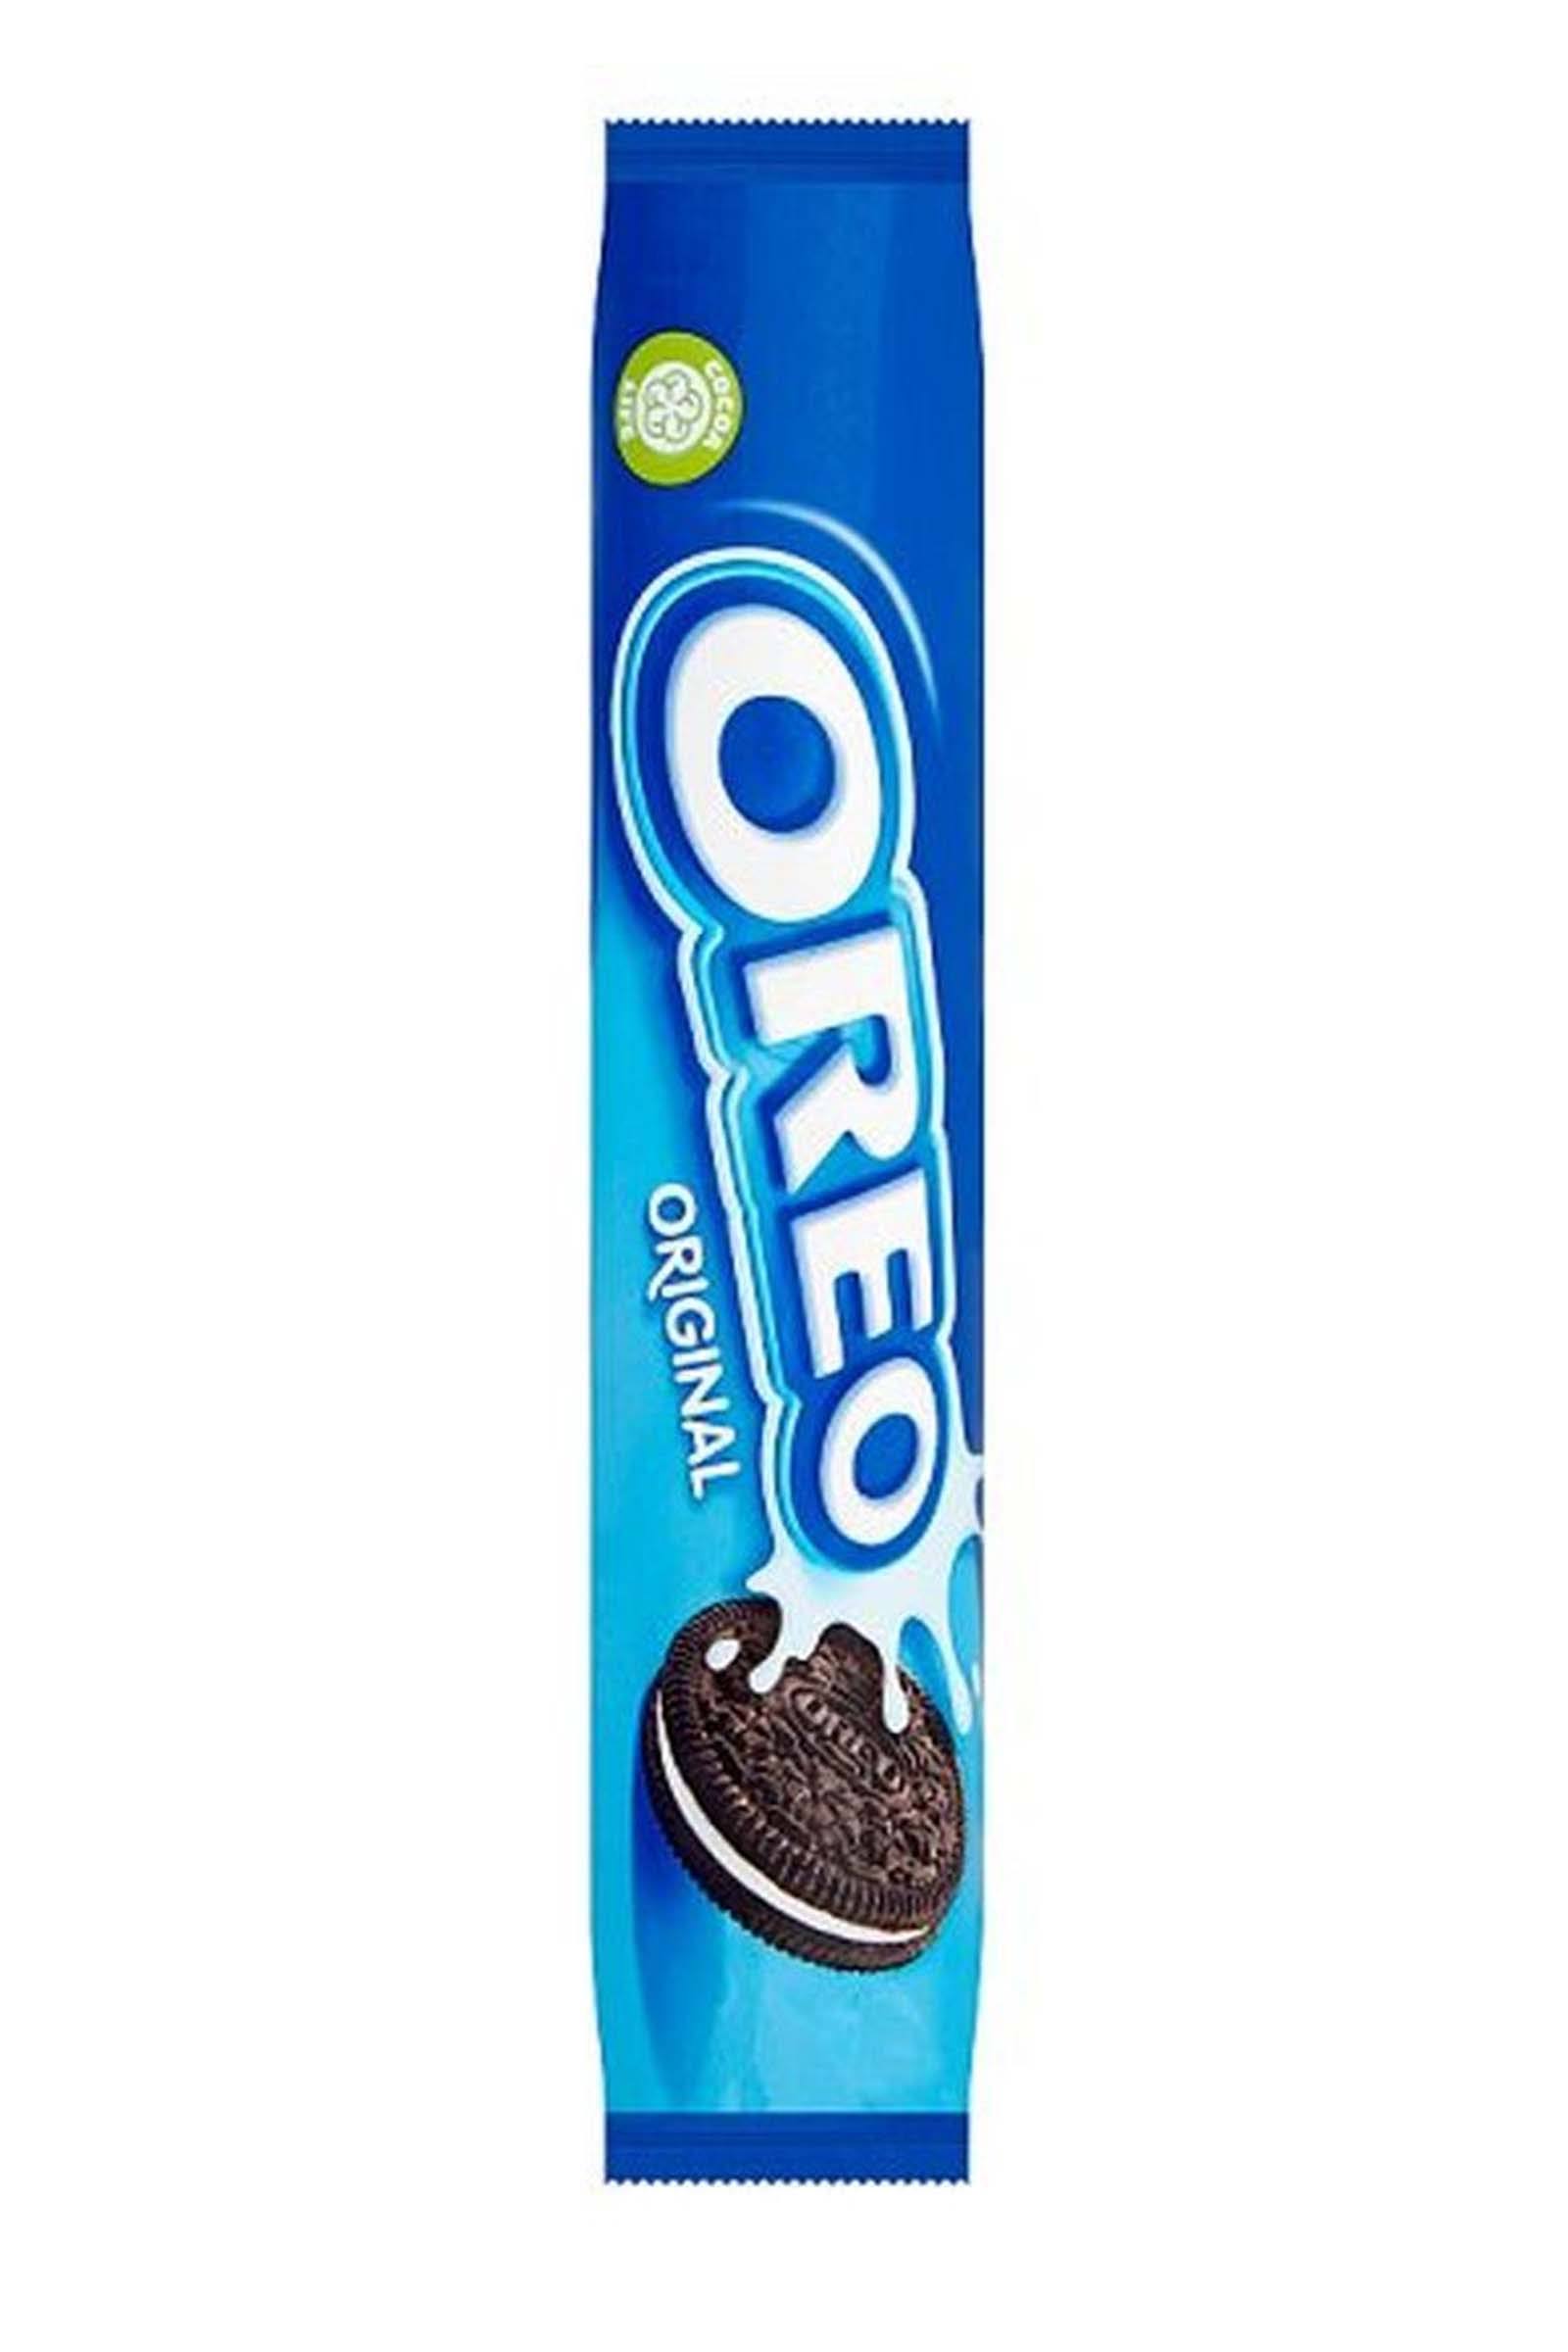 Oreo Original Biscuits